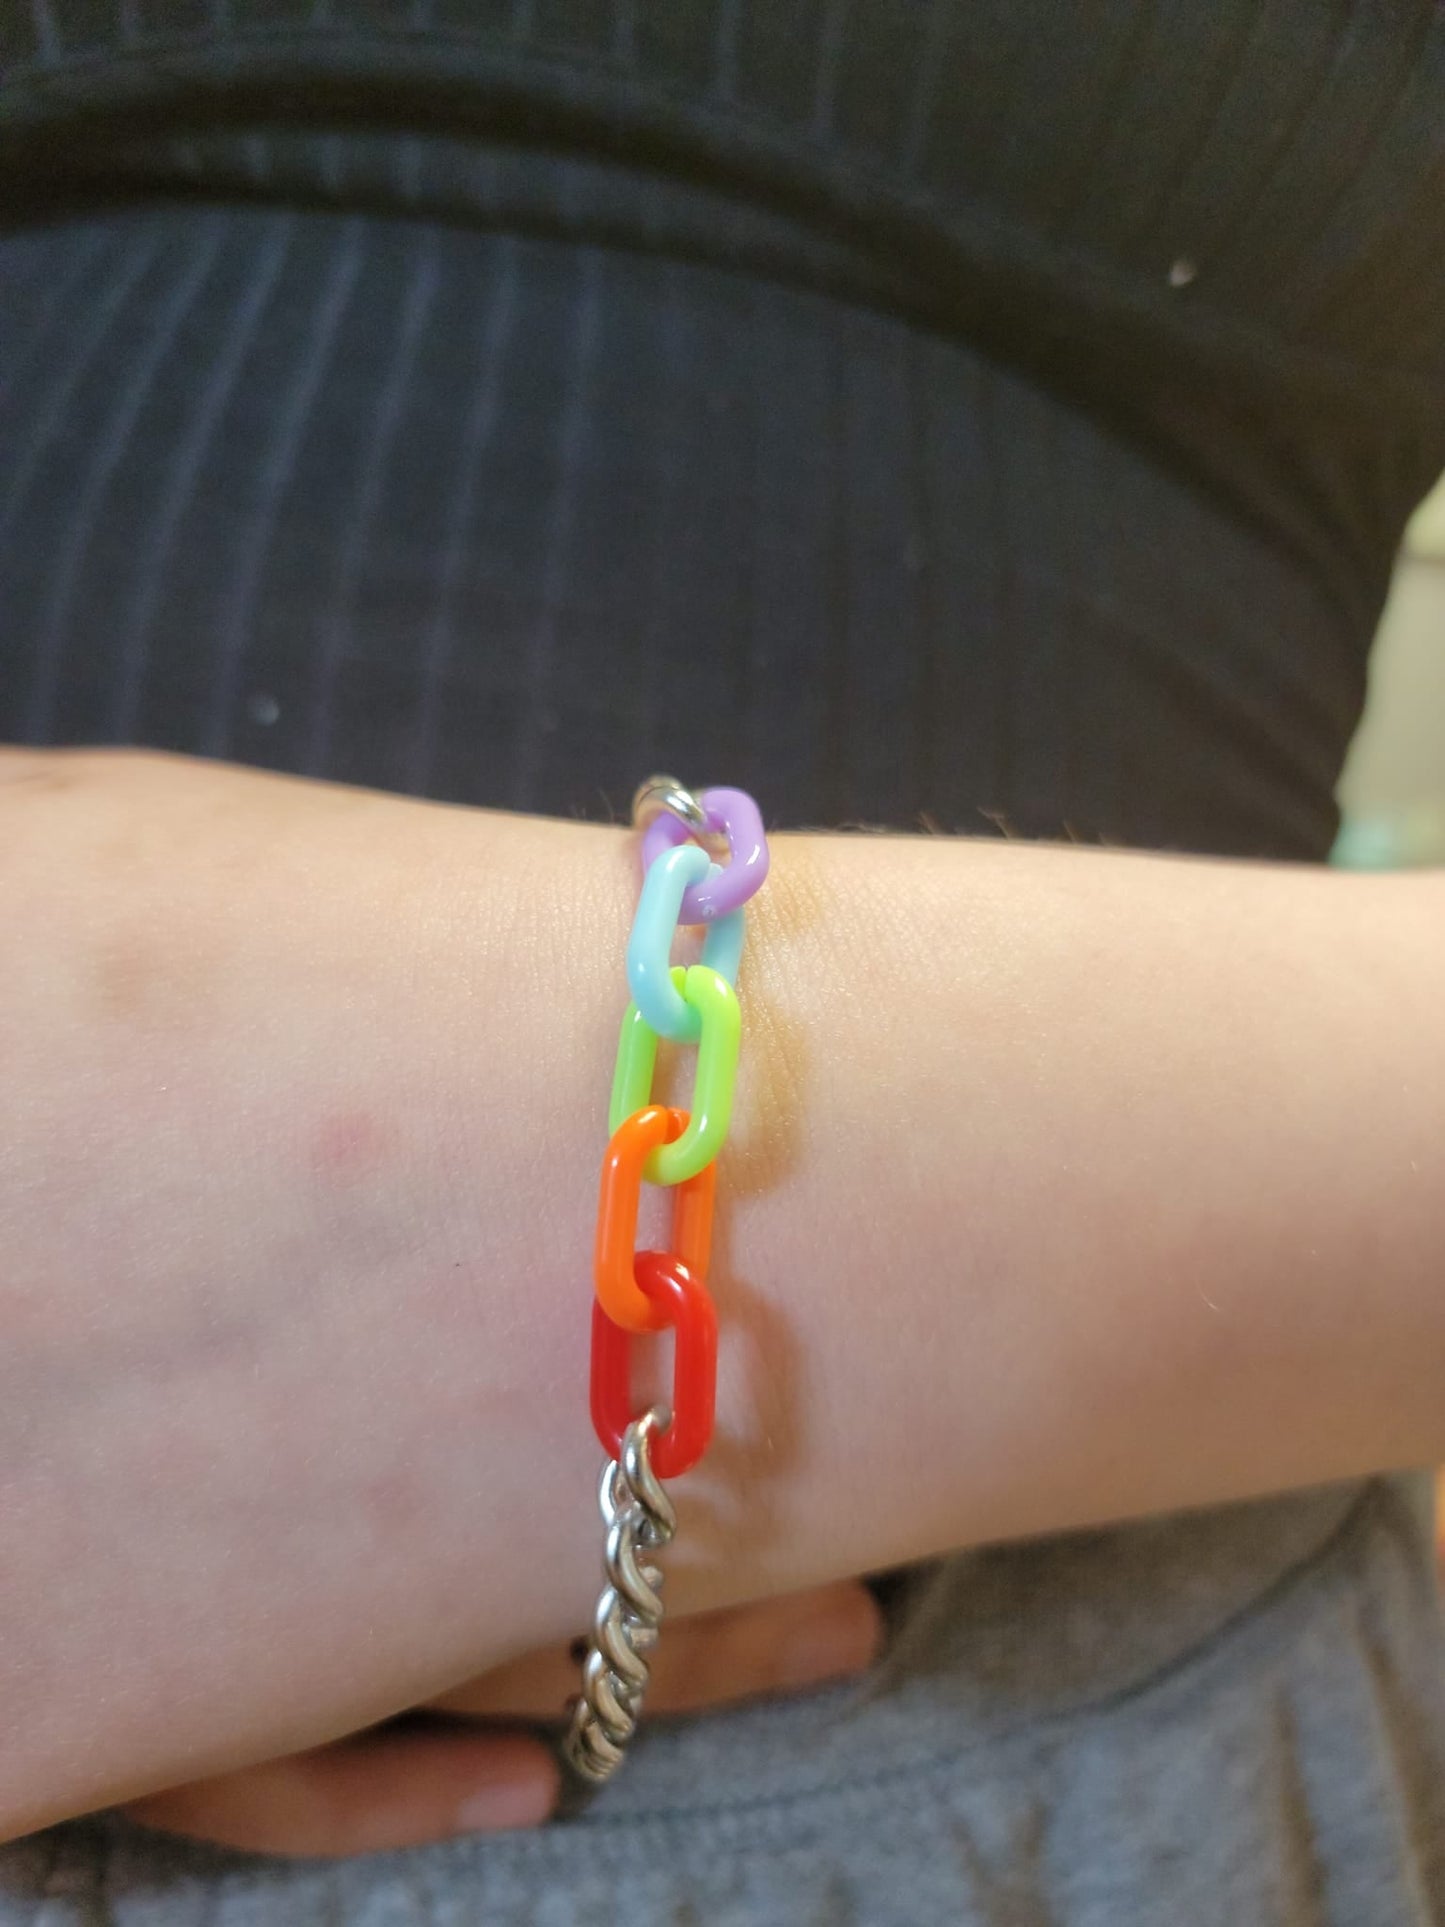 Pride Chain Necklace & Bracelet